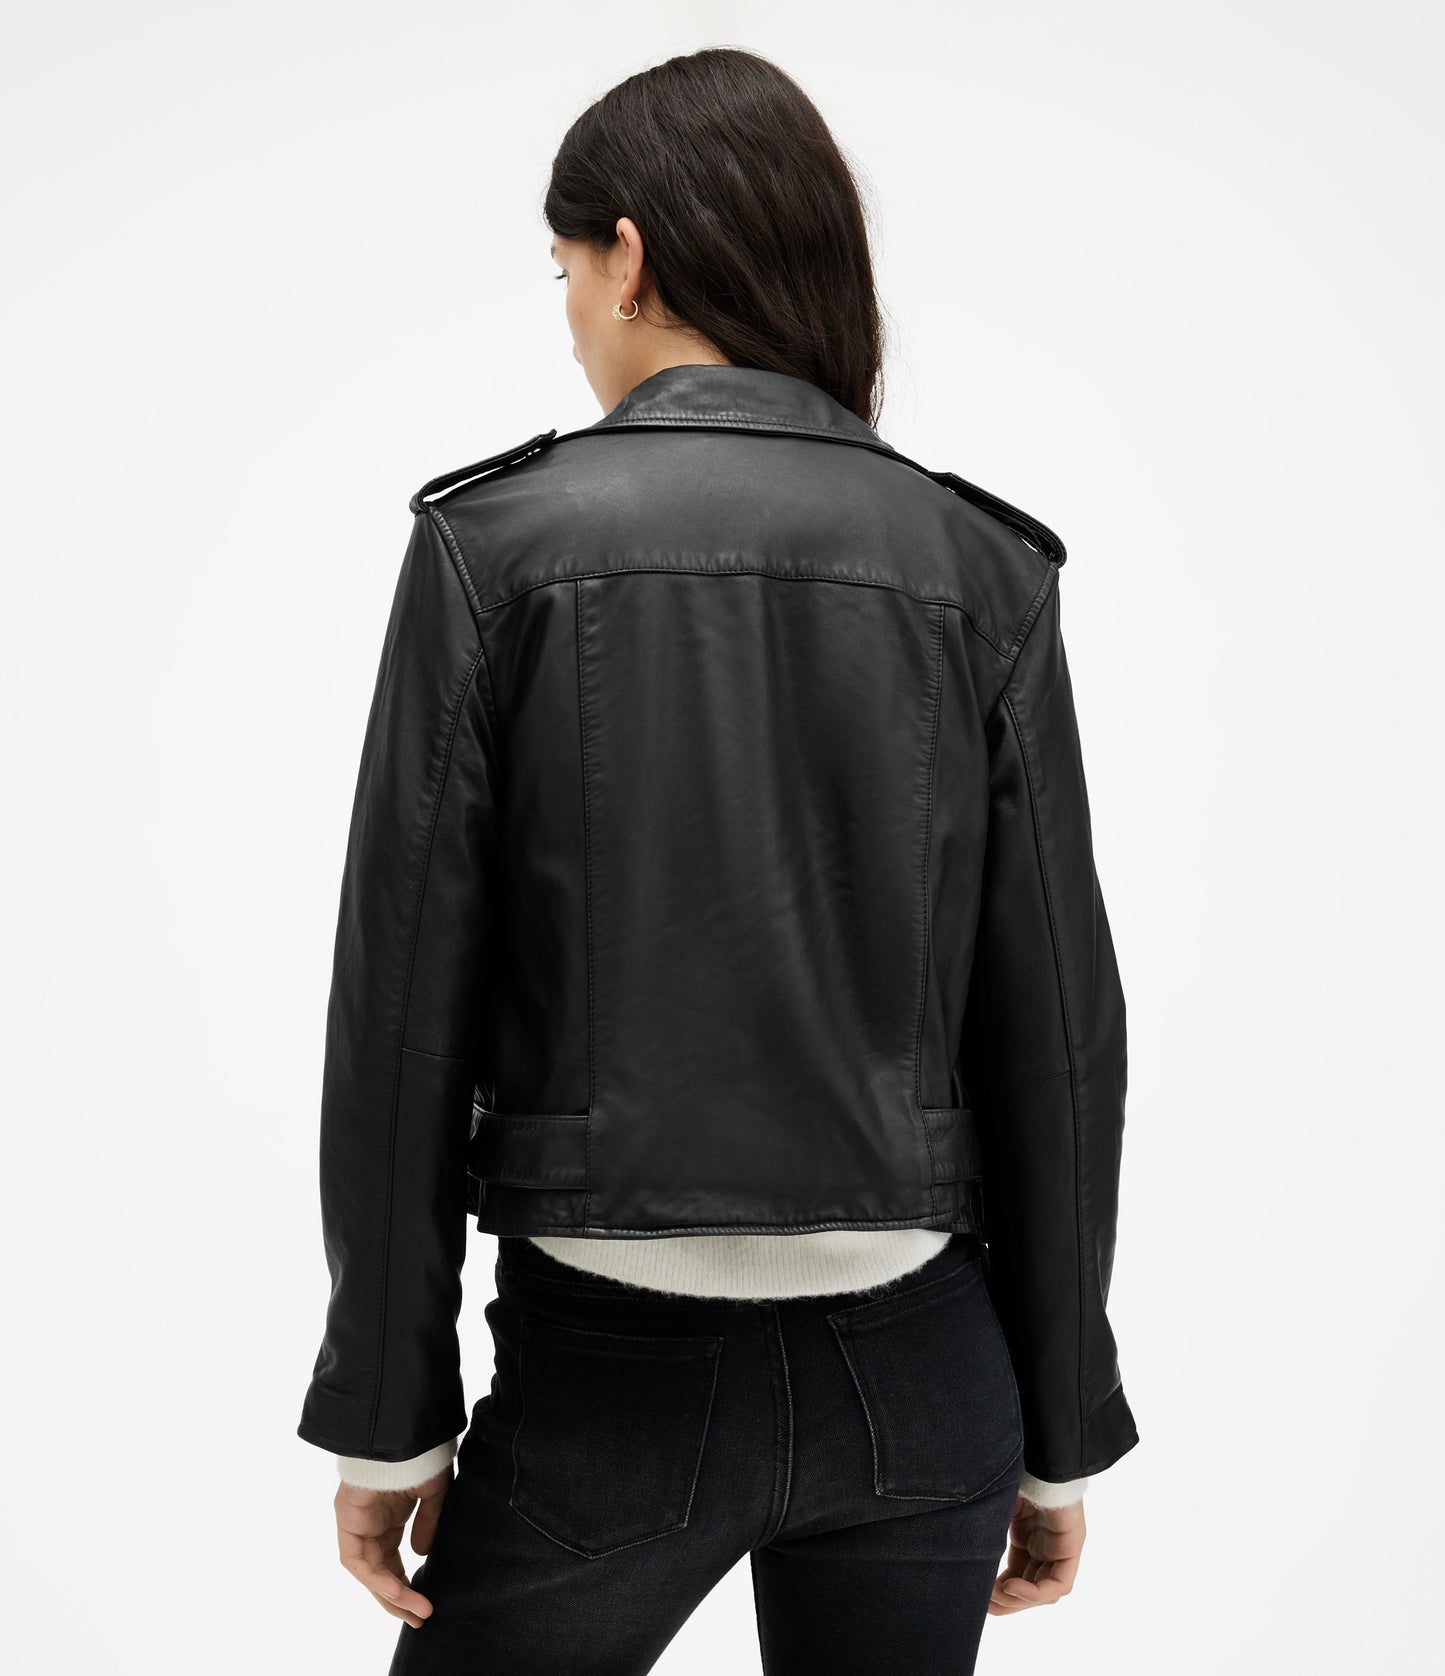 Balfern Valentine Biker Leather Jacket